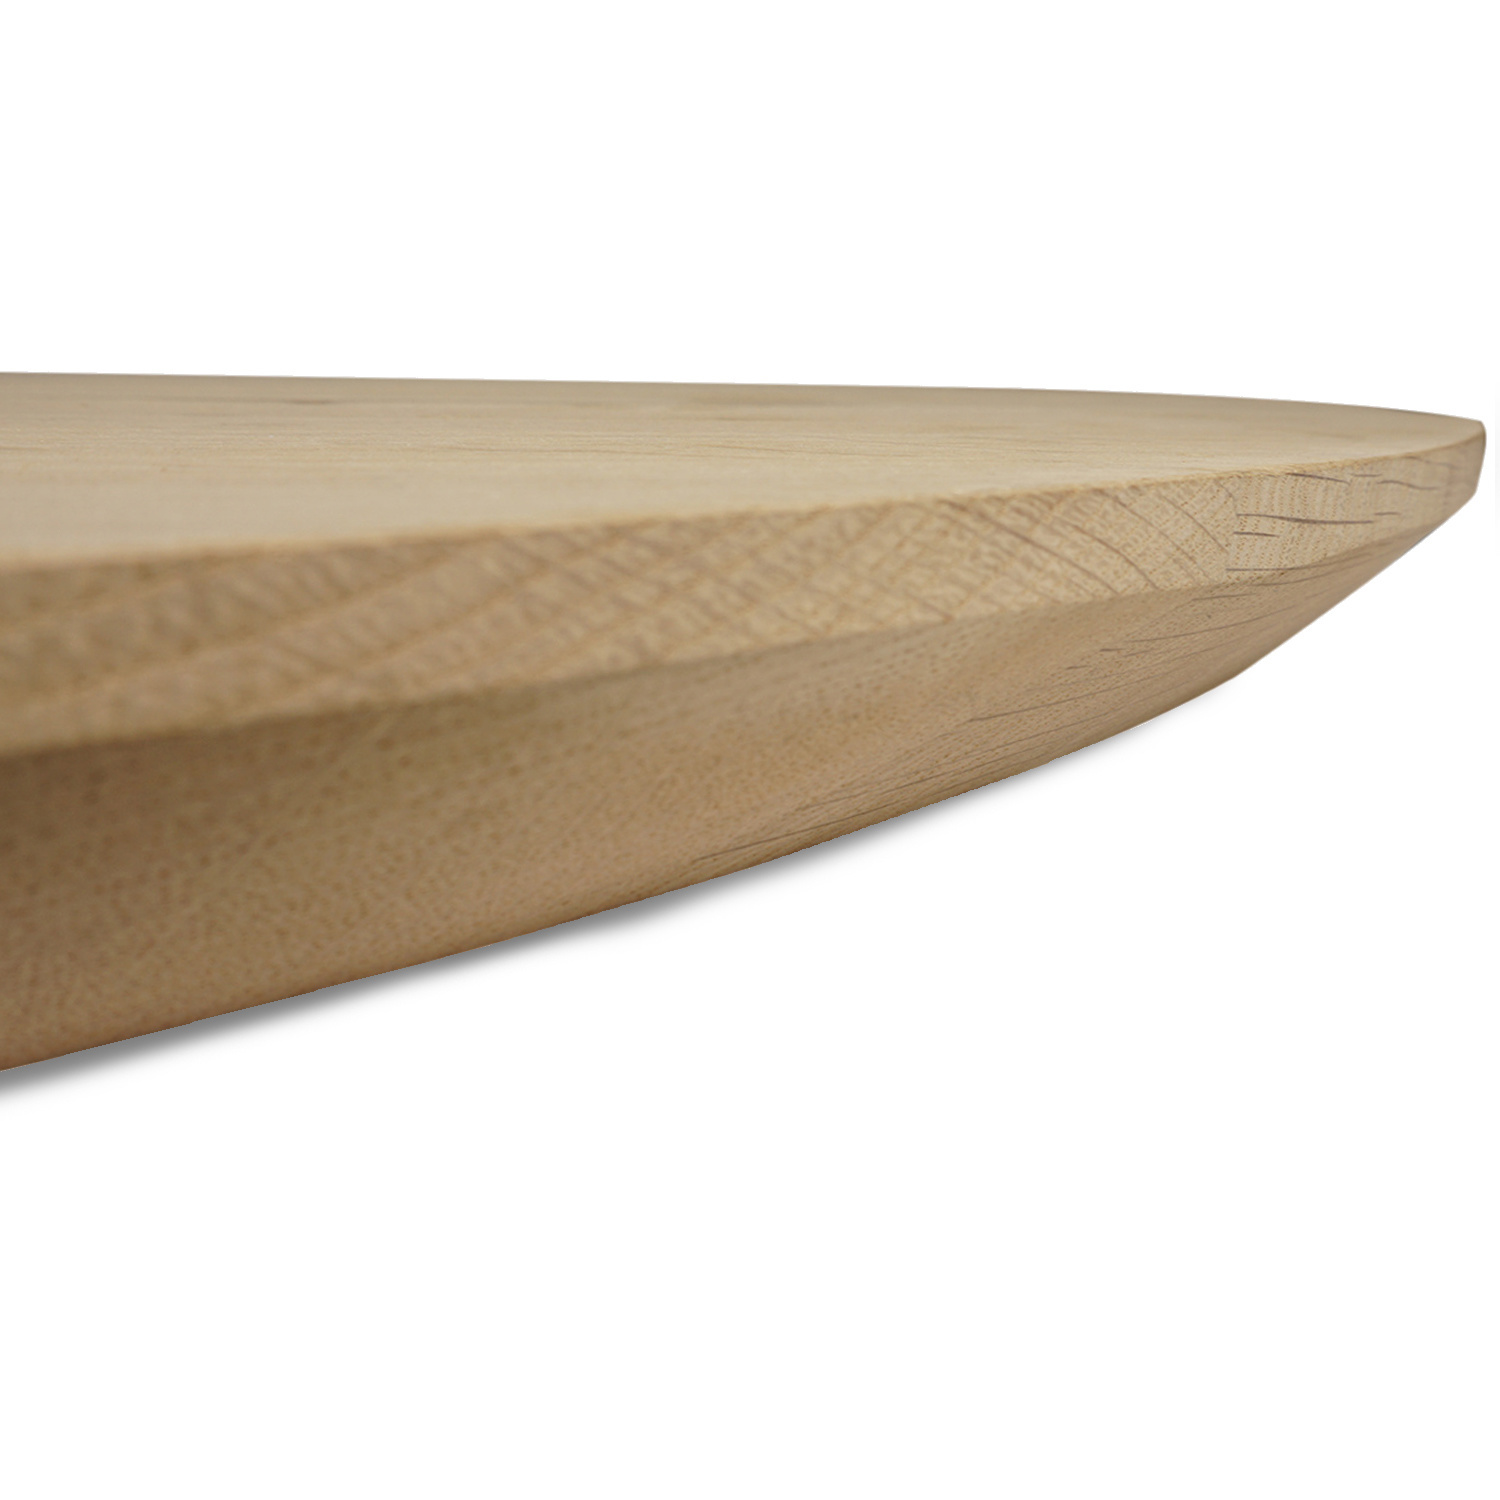  Ovaal eiken tafelblad - 4 cm dik (1-laag) - rustiek Europees eikenhout - tafelblad ellips / ovaal - kd 8-12%